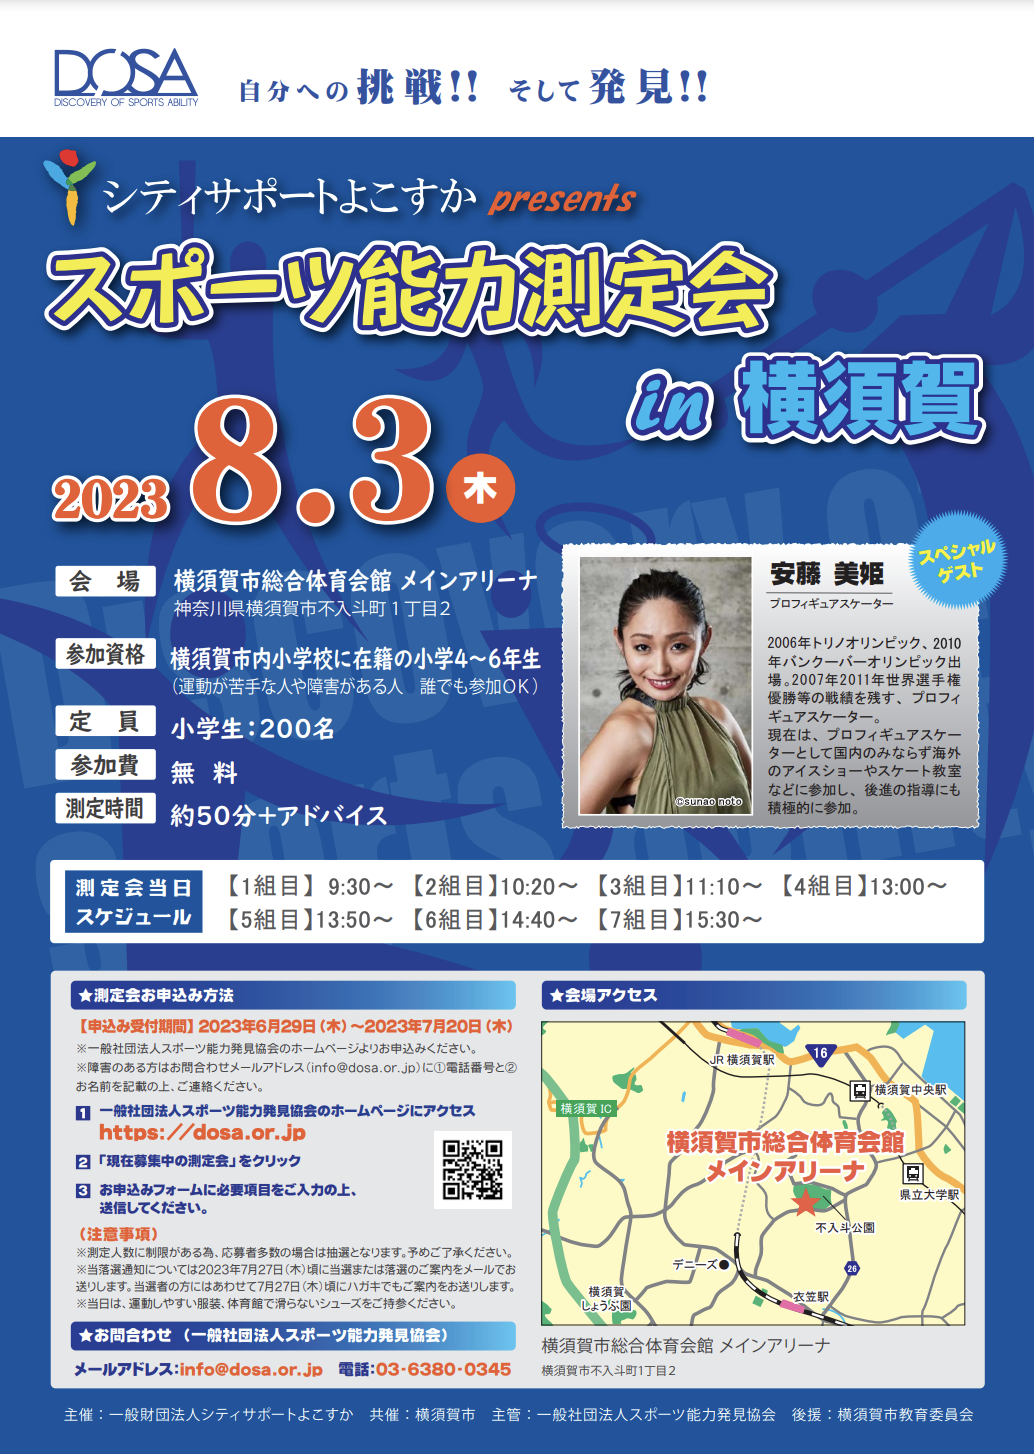 2023/8/3 スポーツ能力測定会 in 横須賀を開催します！